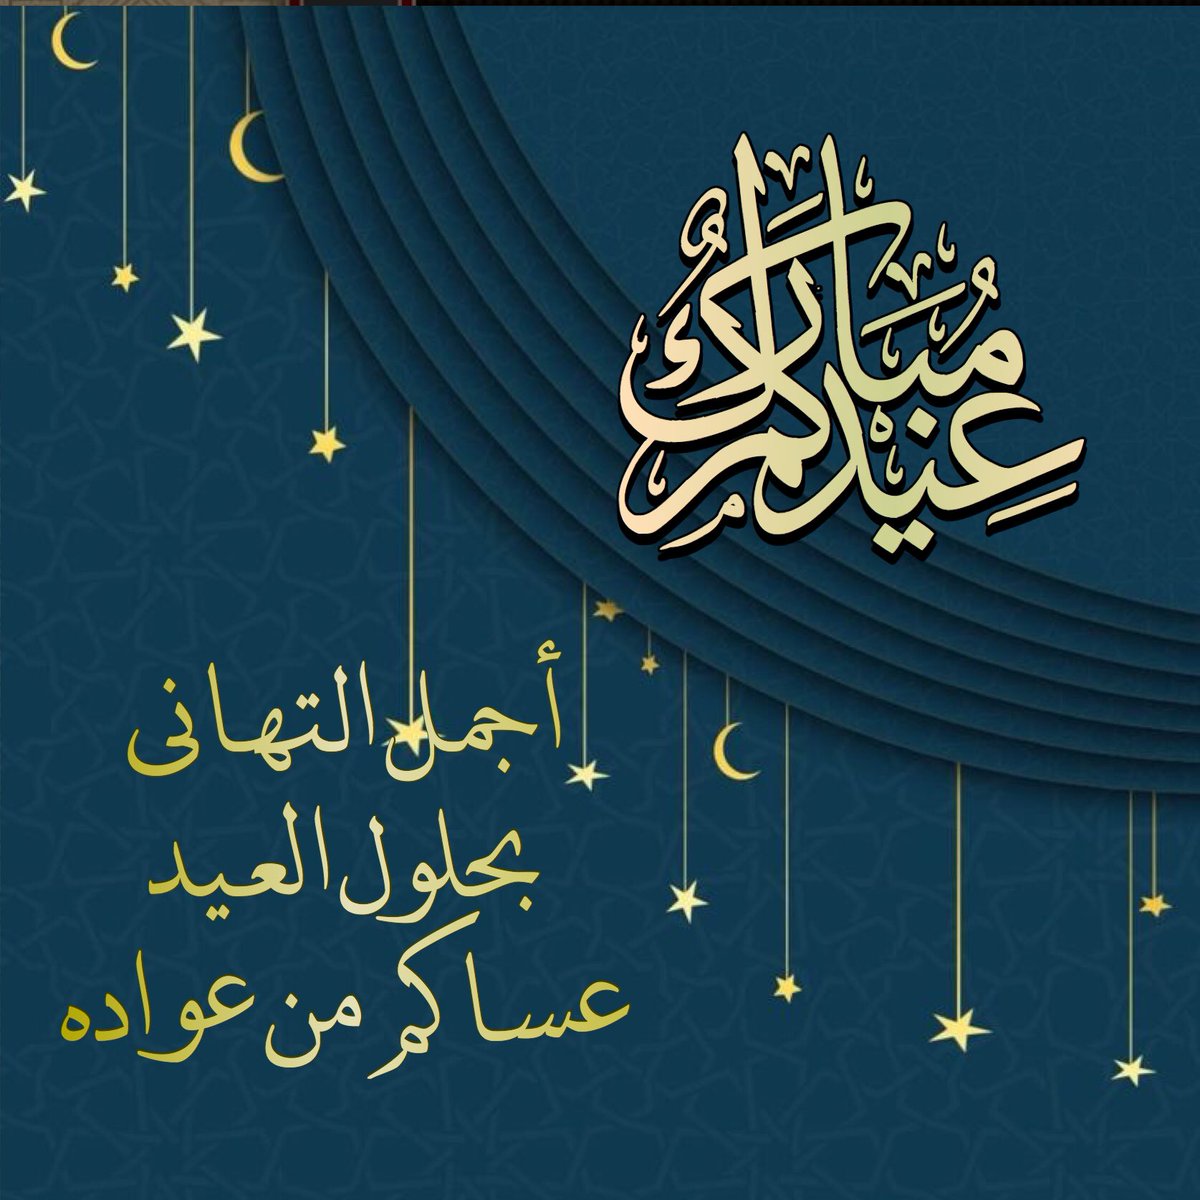 الرد على عيدكم مبارك اذا احد قالي عيدك مبارك وش ترد اقول الموقع المثالي